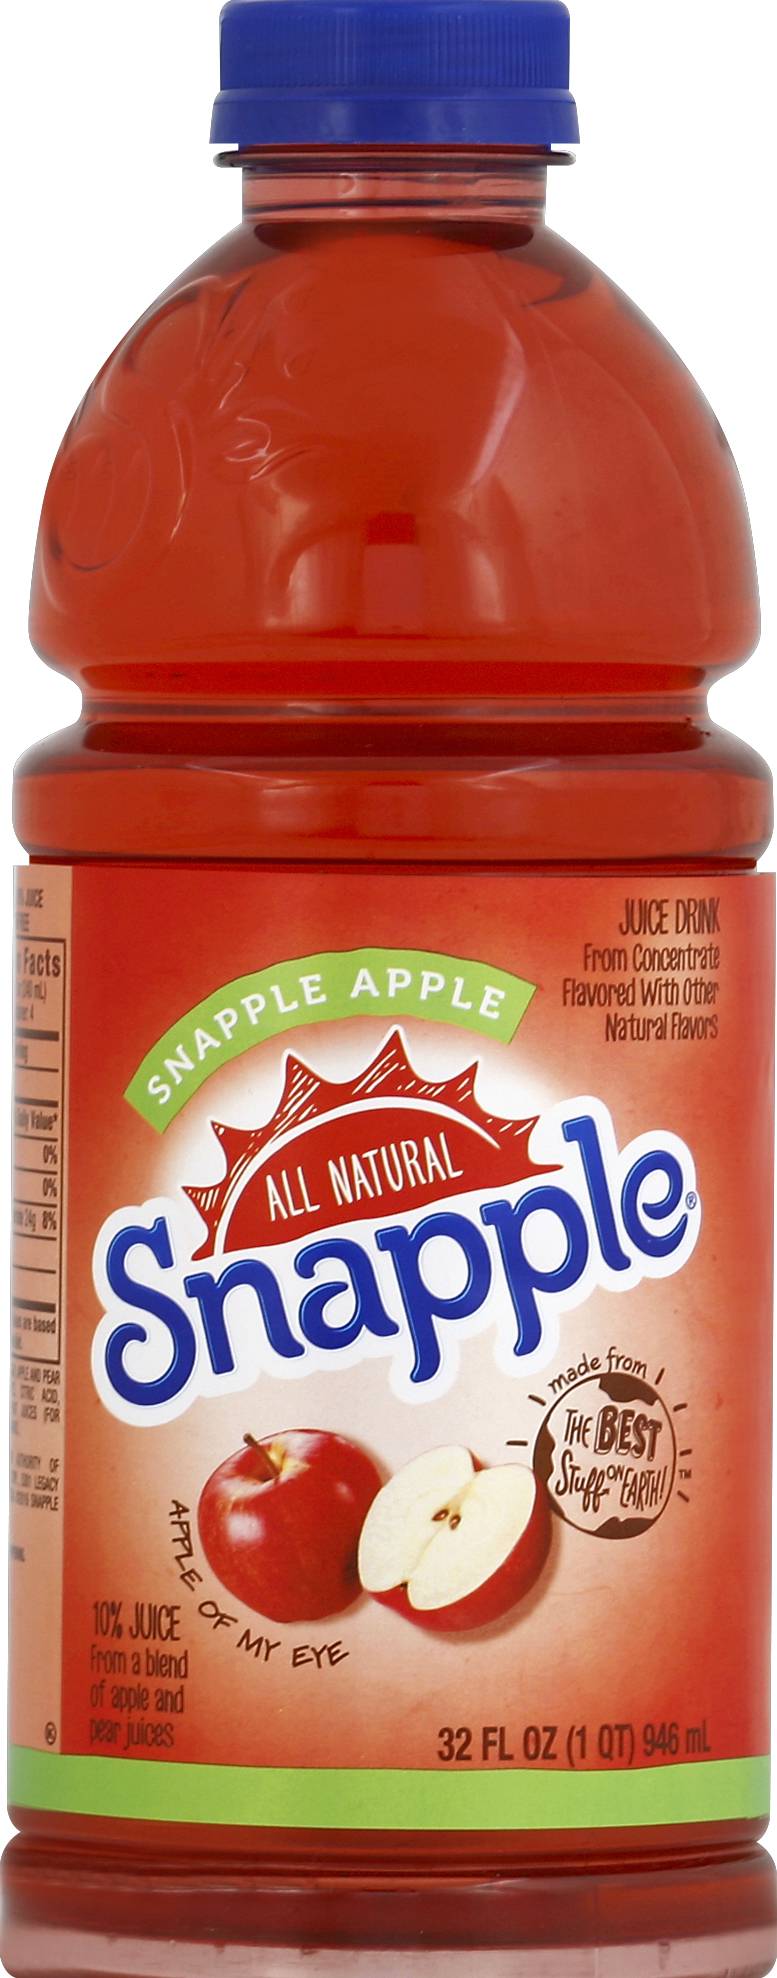 Snapple Natural Juice Drink (32 fl oz) (apple)